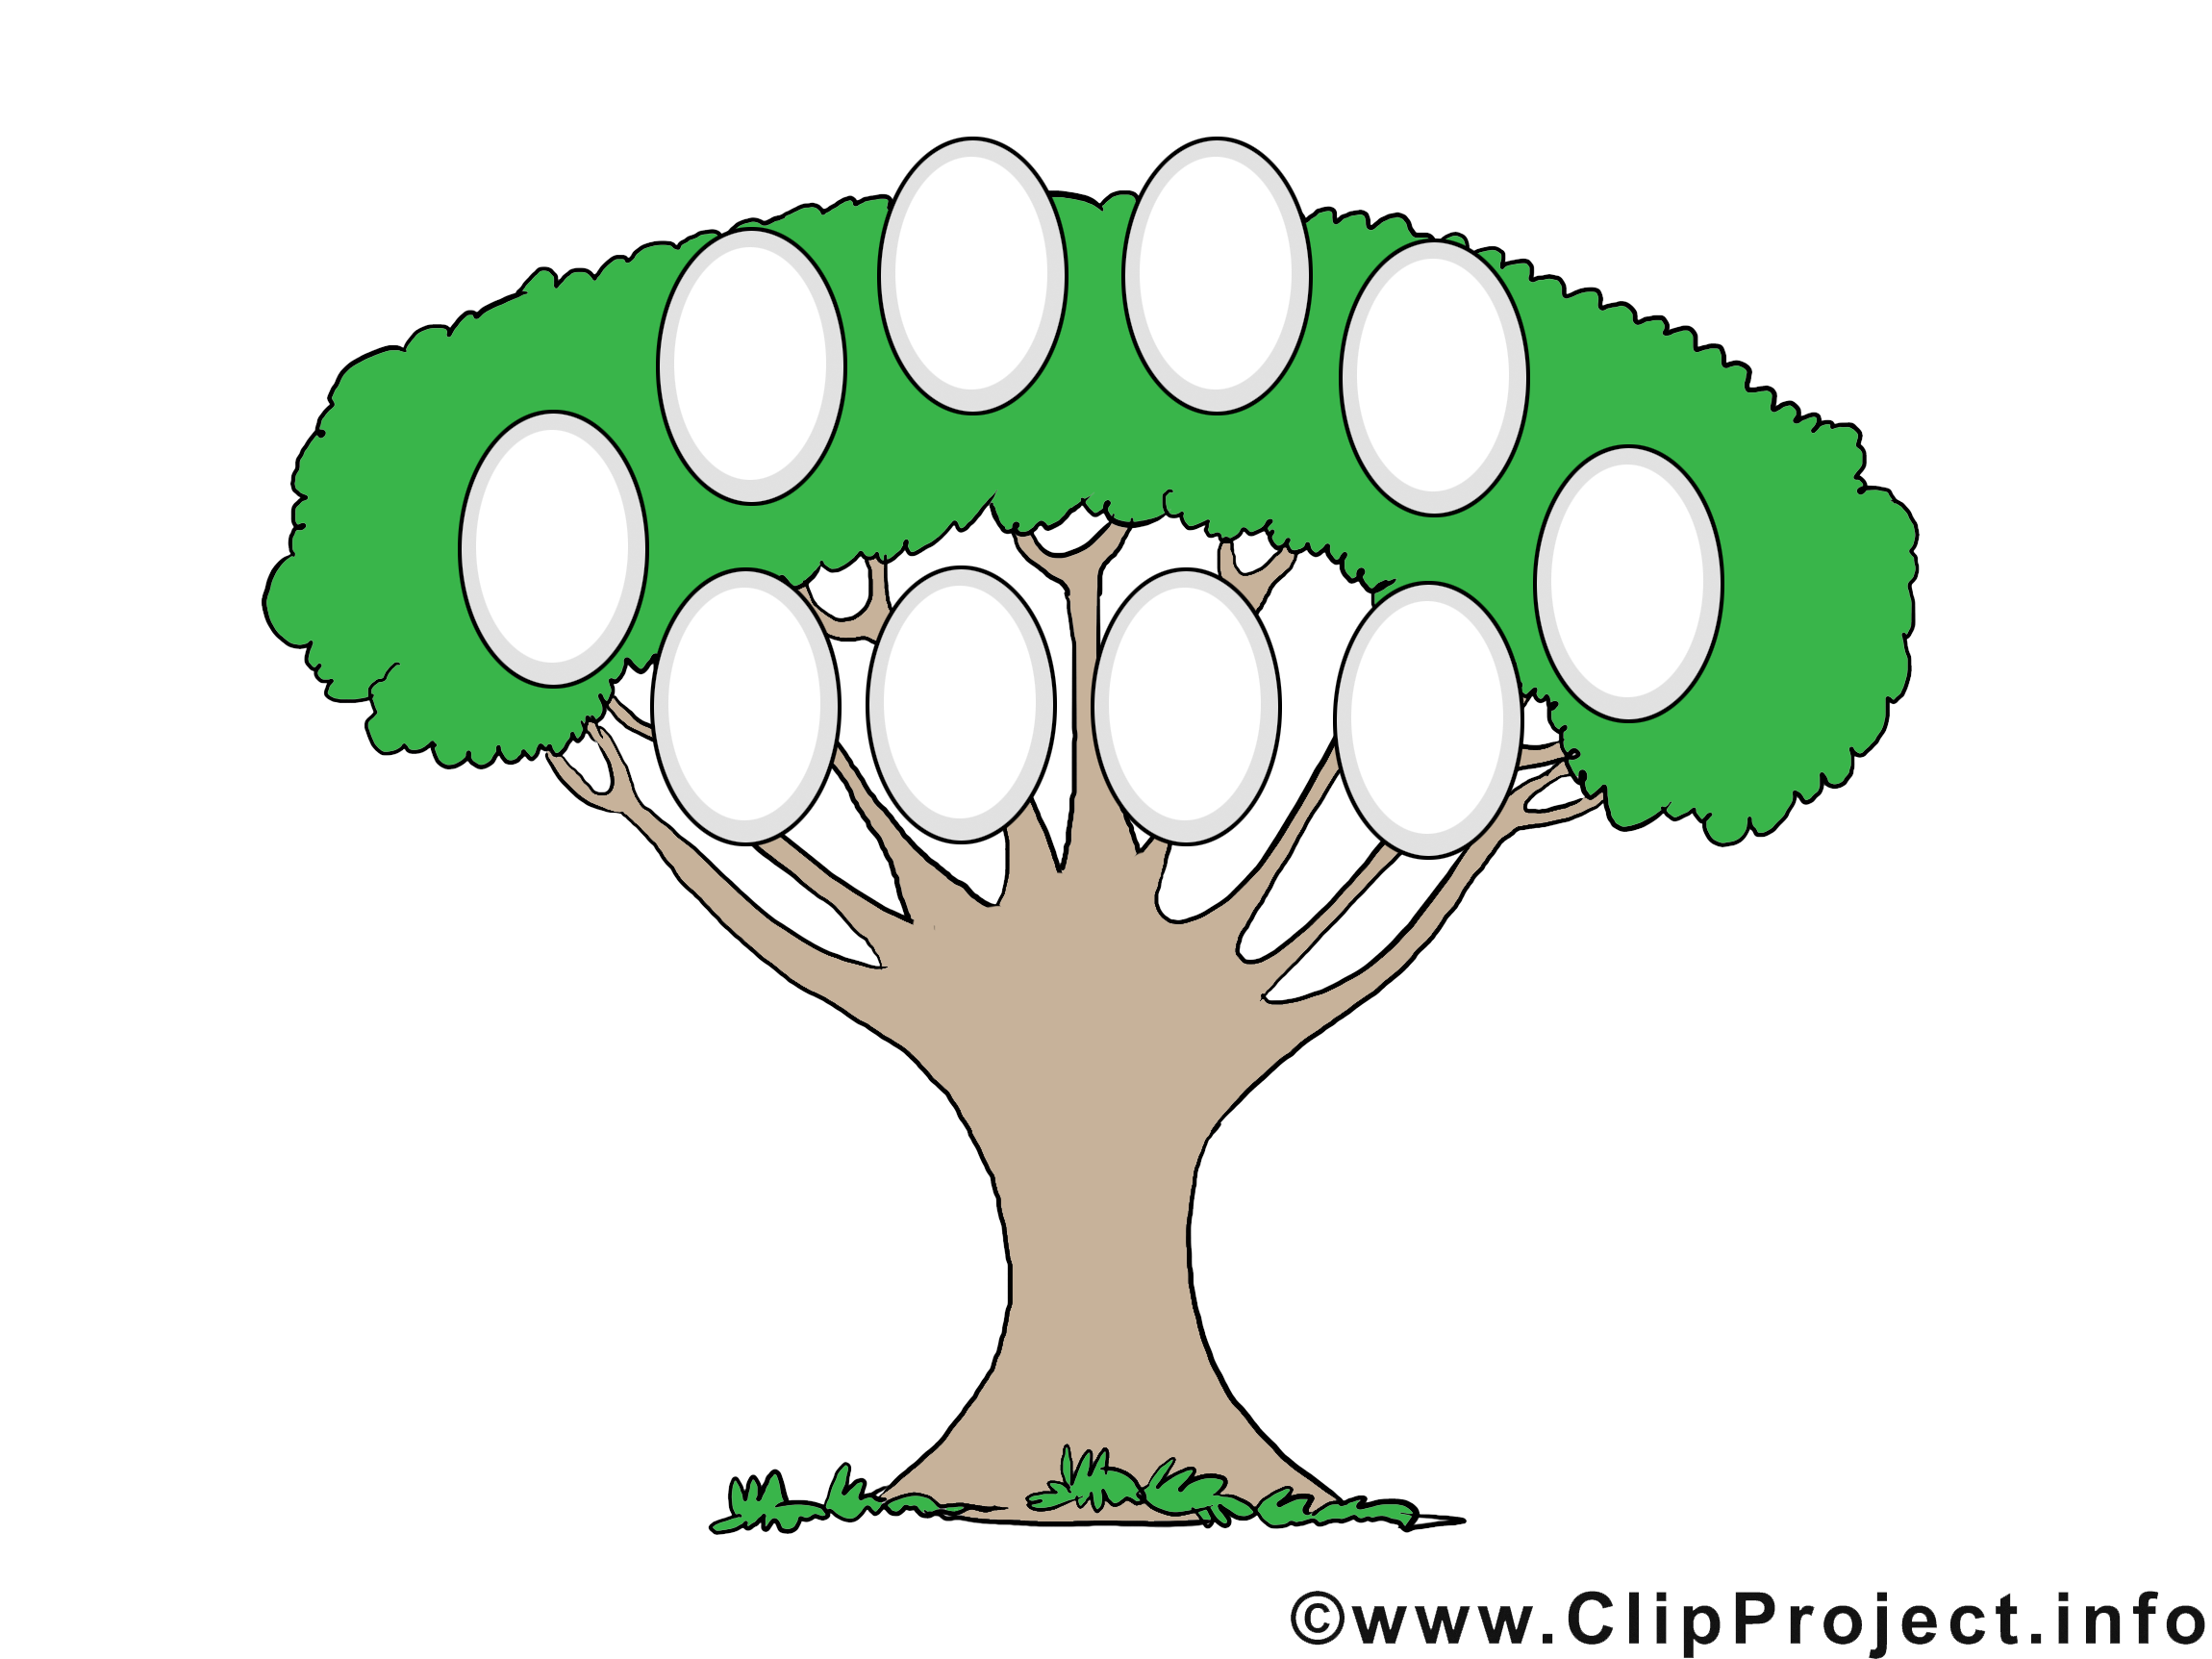 Clip art image gratuite arbre généalogique